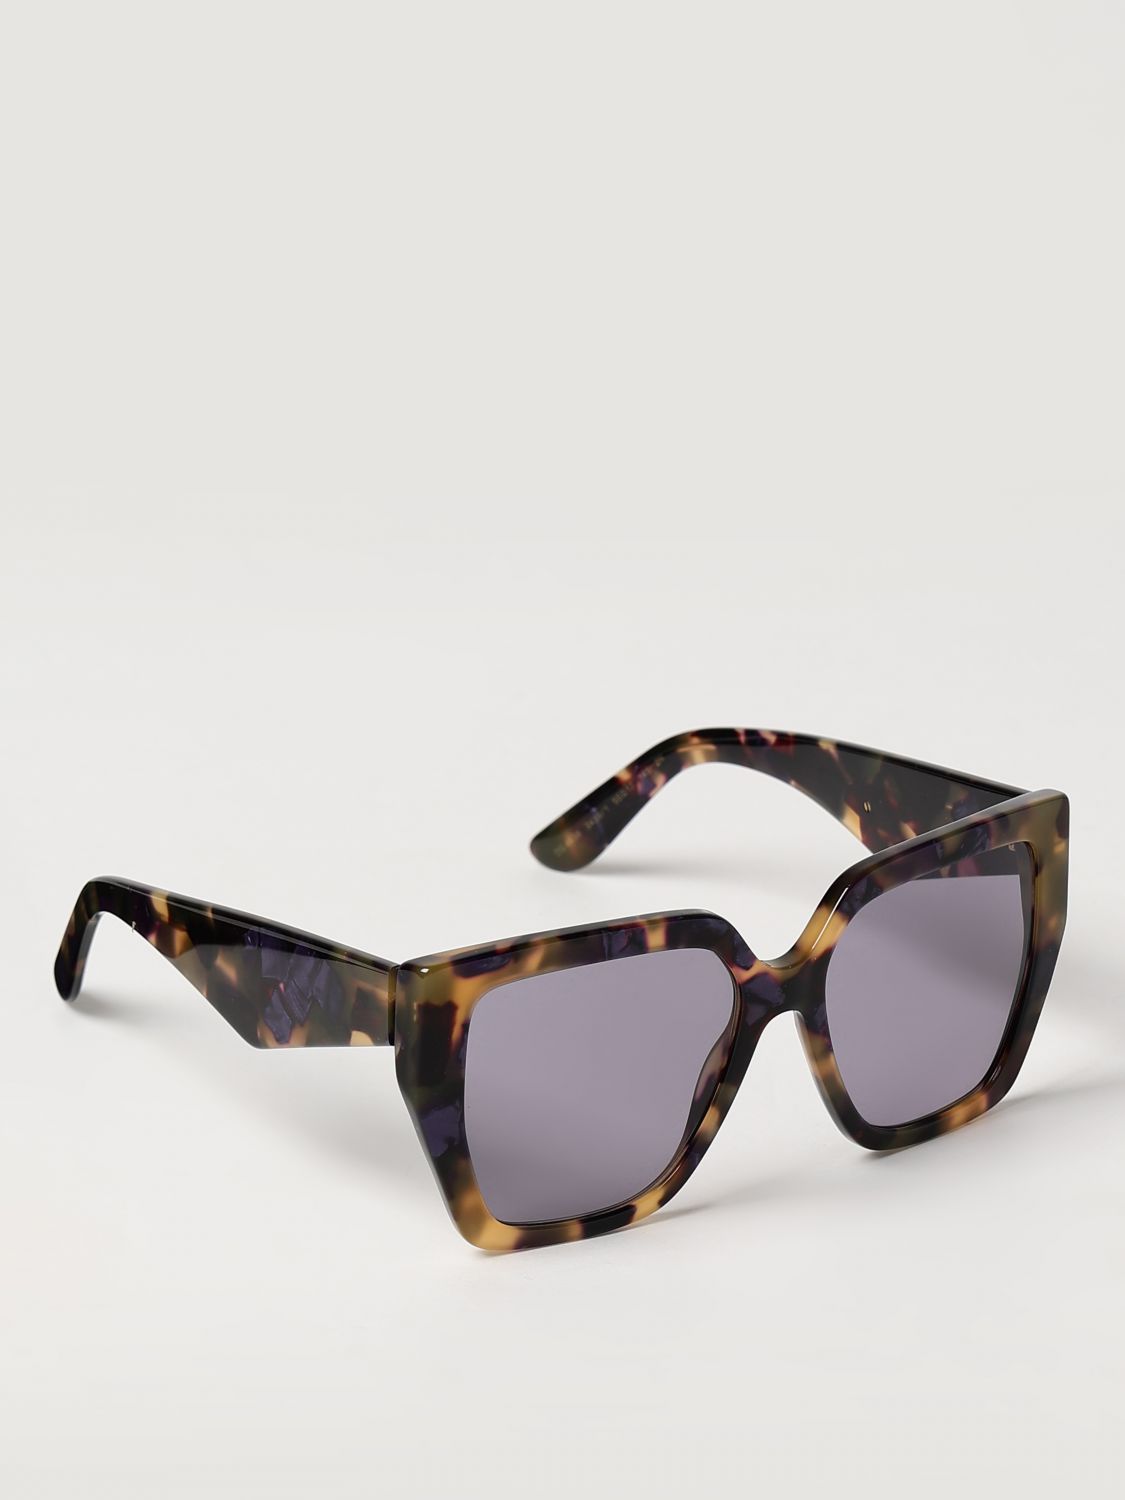 Dolce & Gabbana Sunglasses DOLCE & GABBANA Woman color Brown